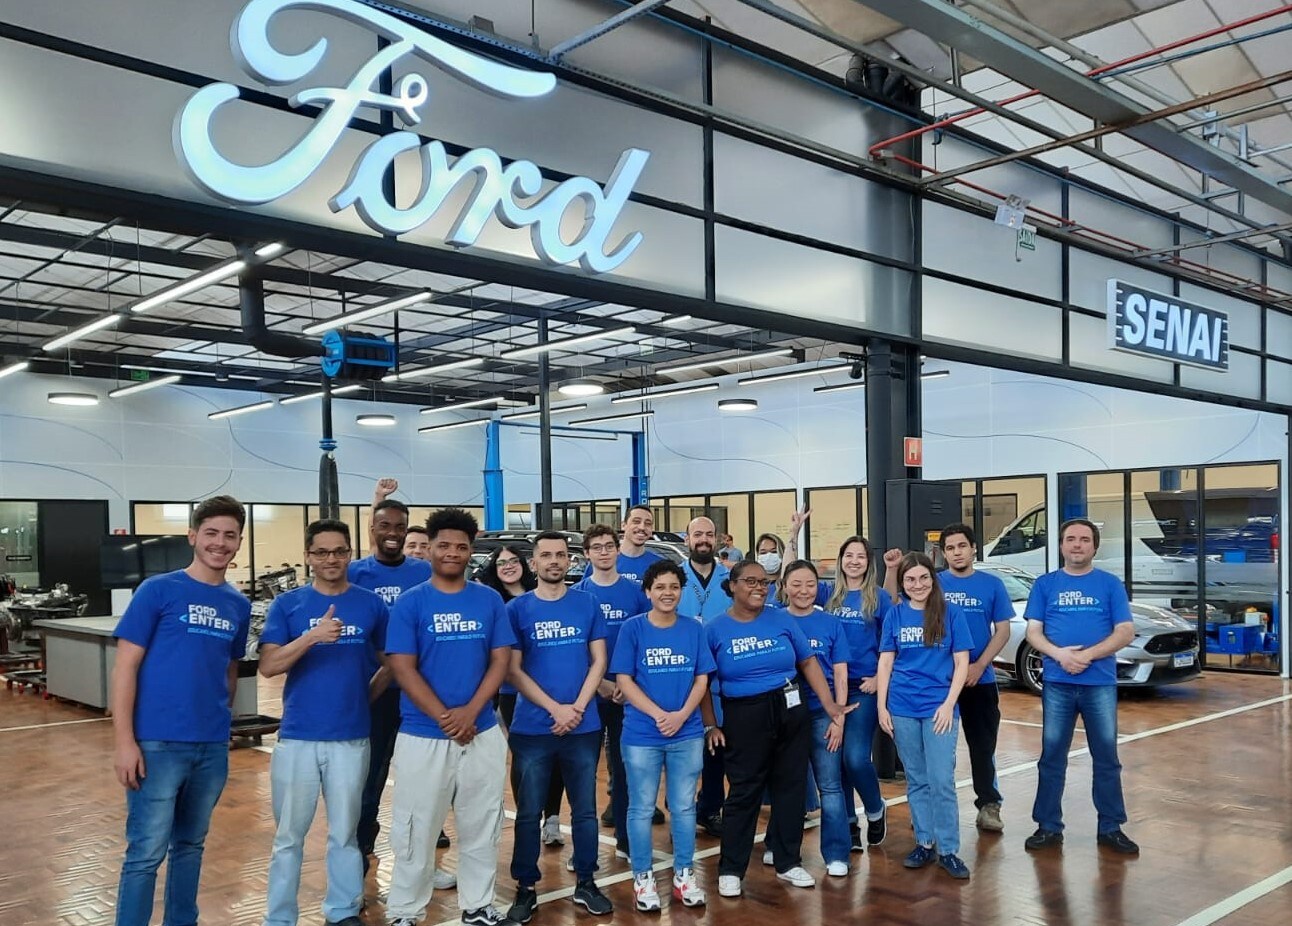 Ford oferece curso de tecnologia para pessoas de baixa renda